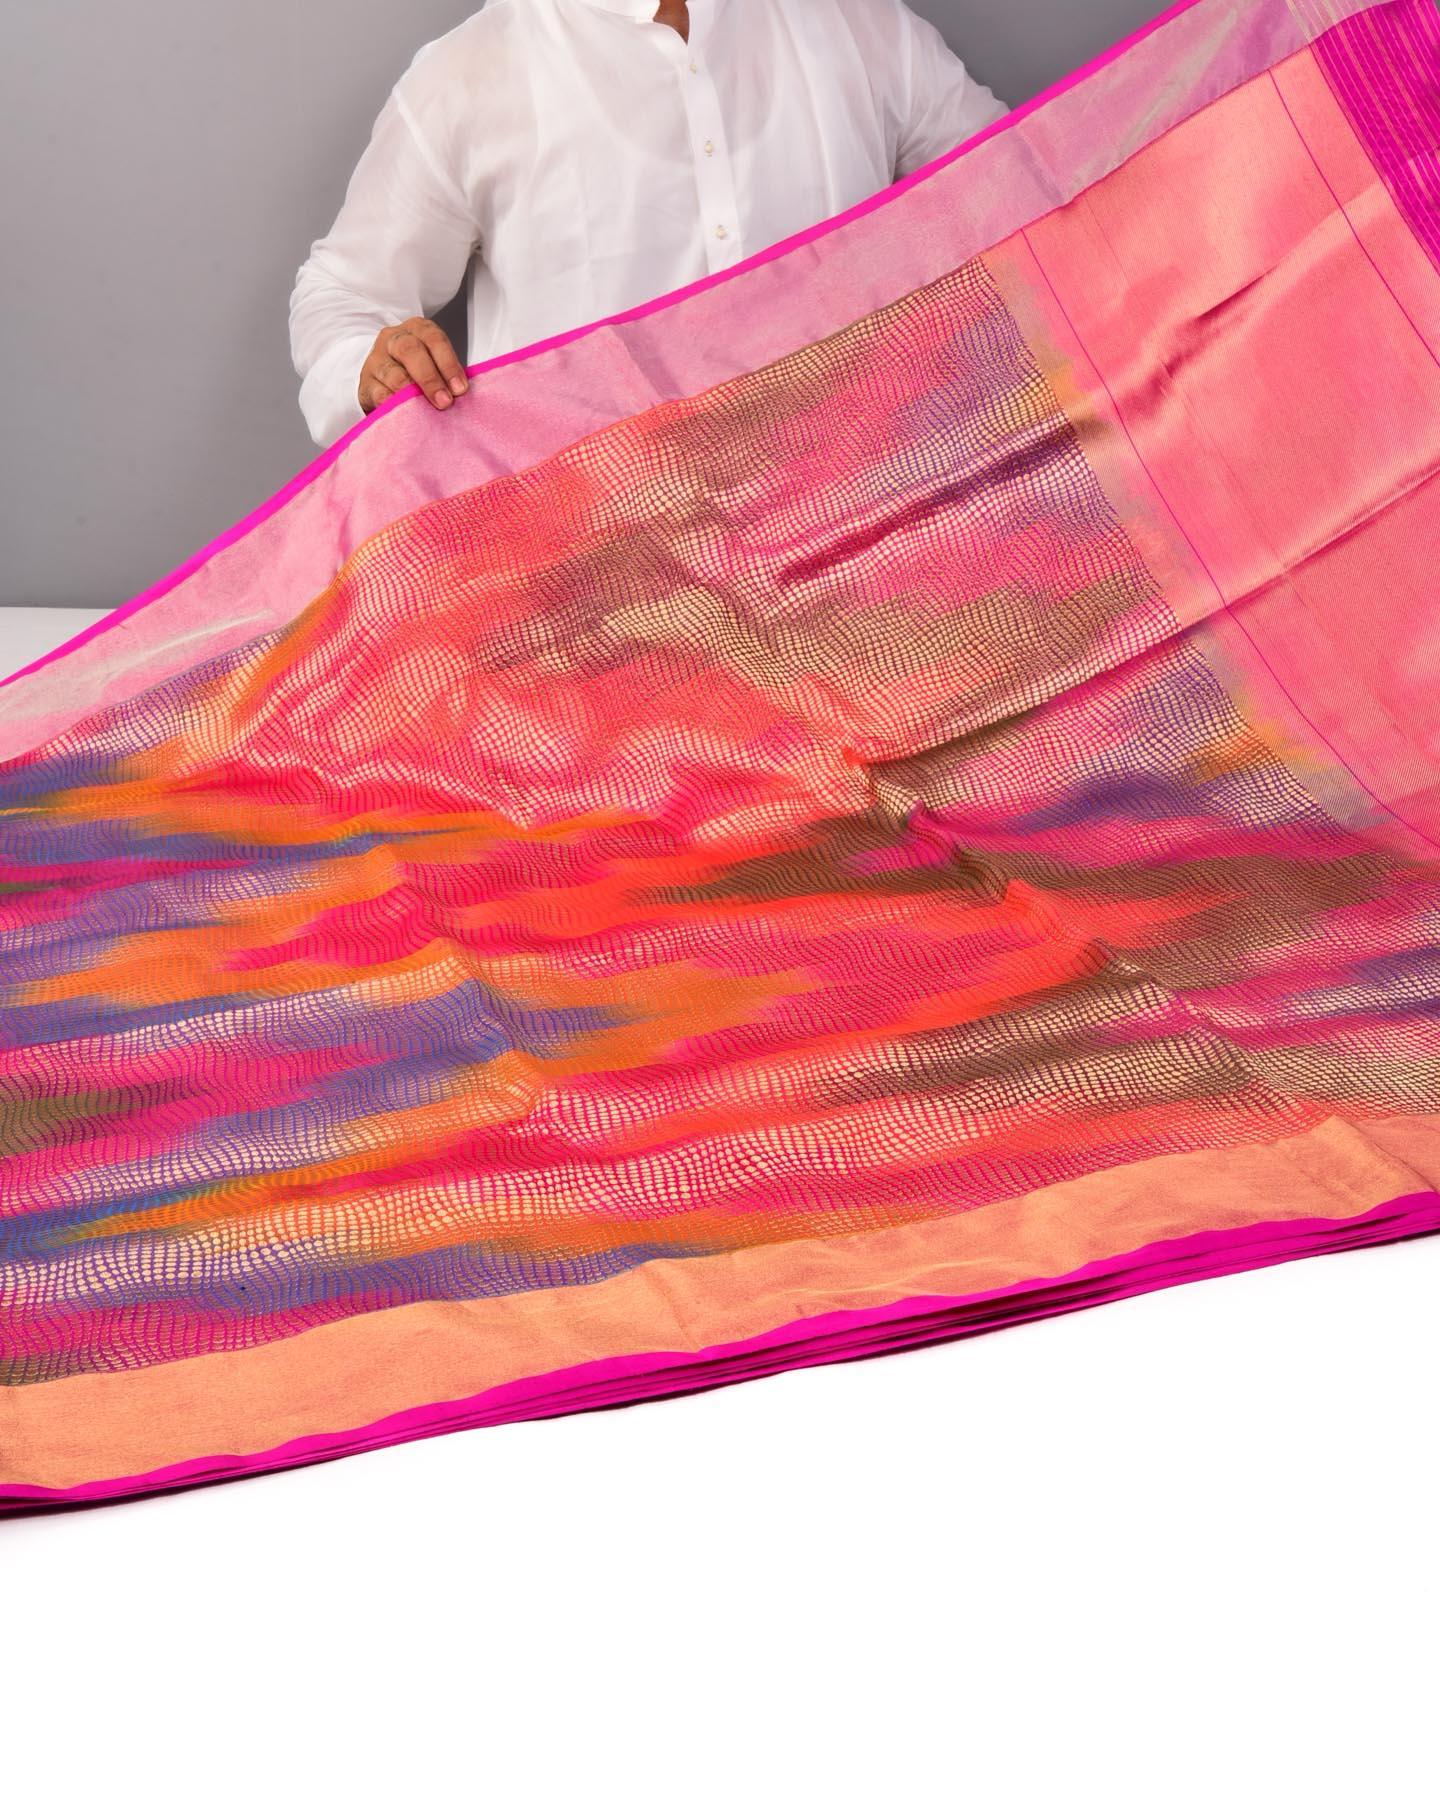 Vibgyor Pink Banarasi Python Brocade Handwoven Katan Silk Saree - By HolyWeaves, Benares